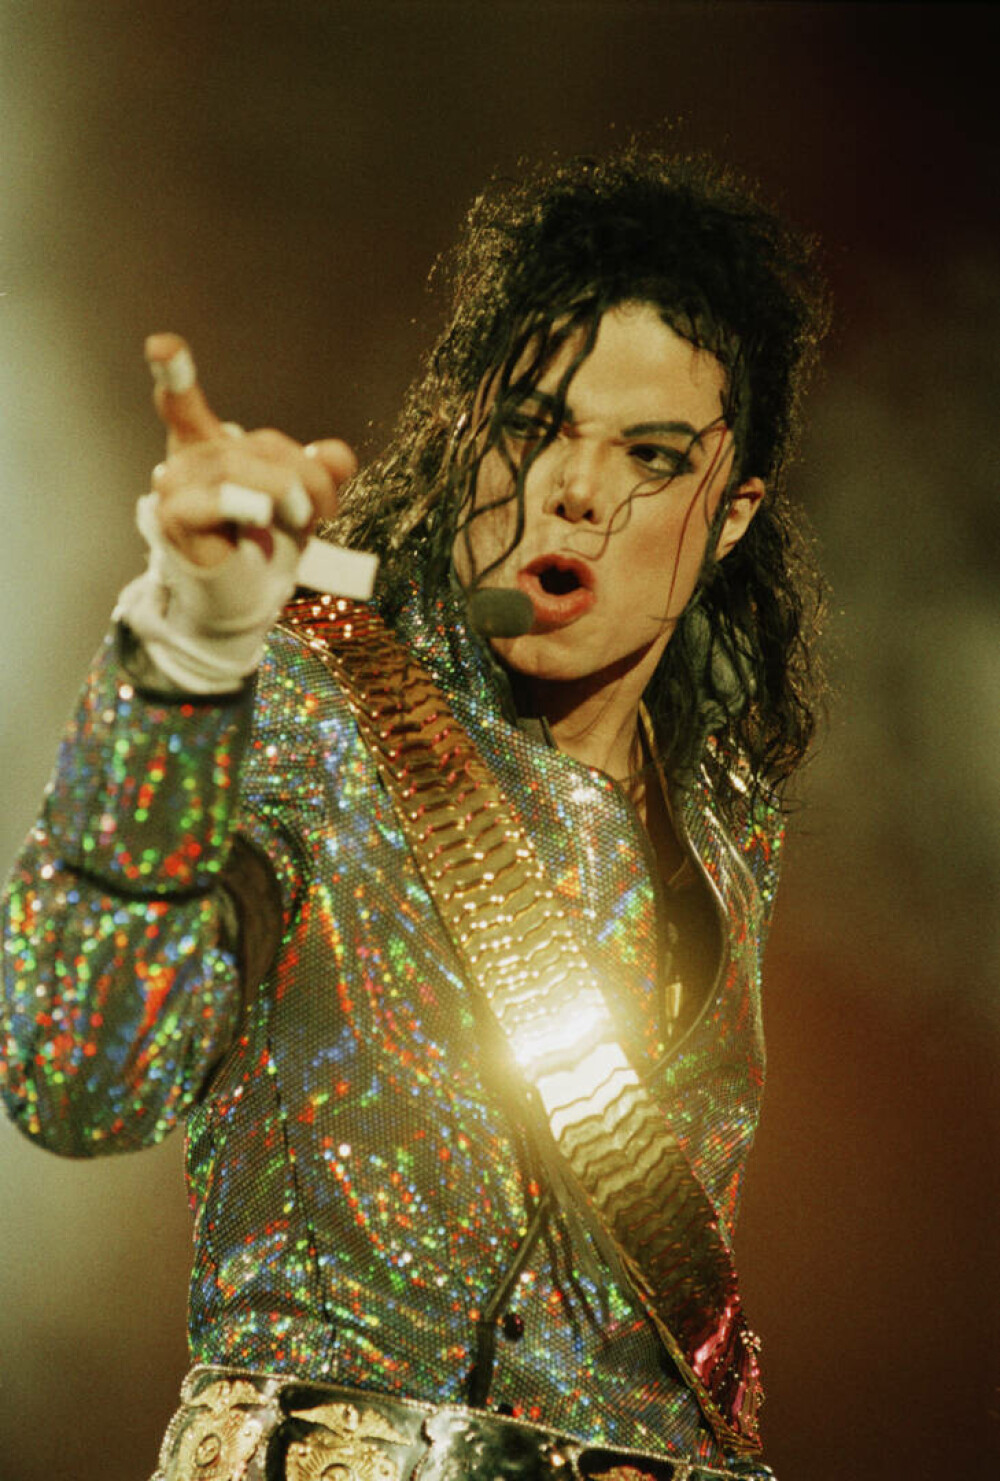 Imagini de colecție cu Michael Jackson. Regele muzicii pop ar fi împlinit 65 de ani | GALERIE FOTO - Imaginea 43